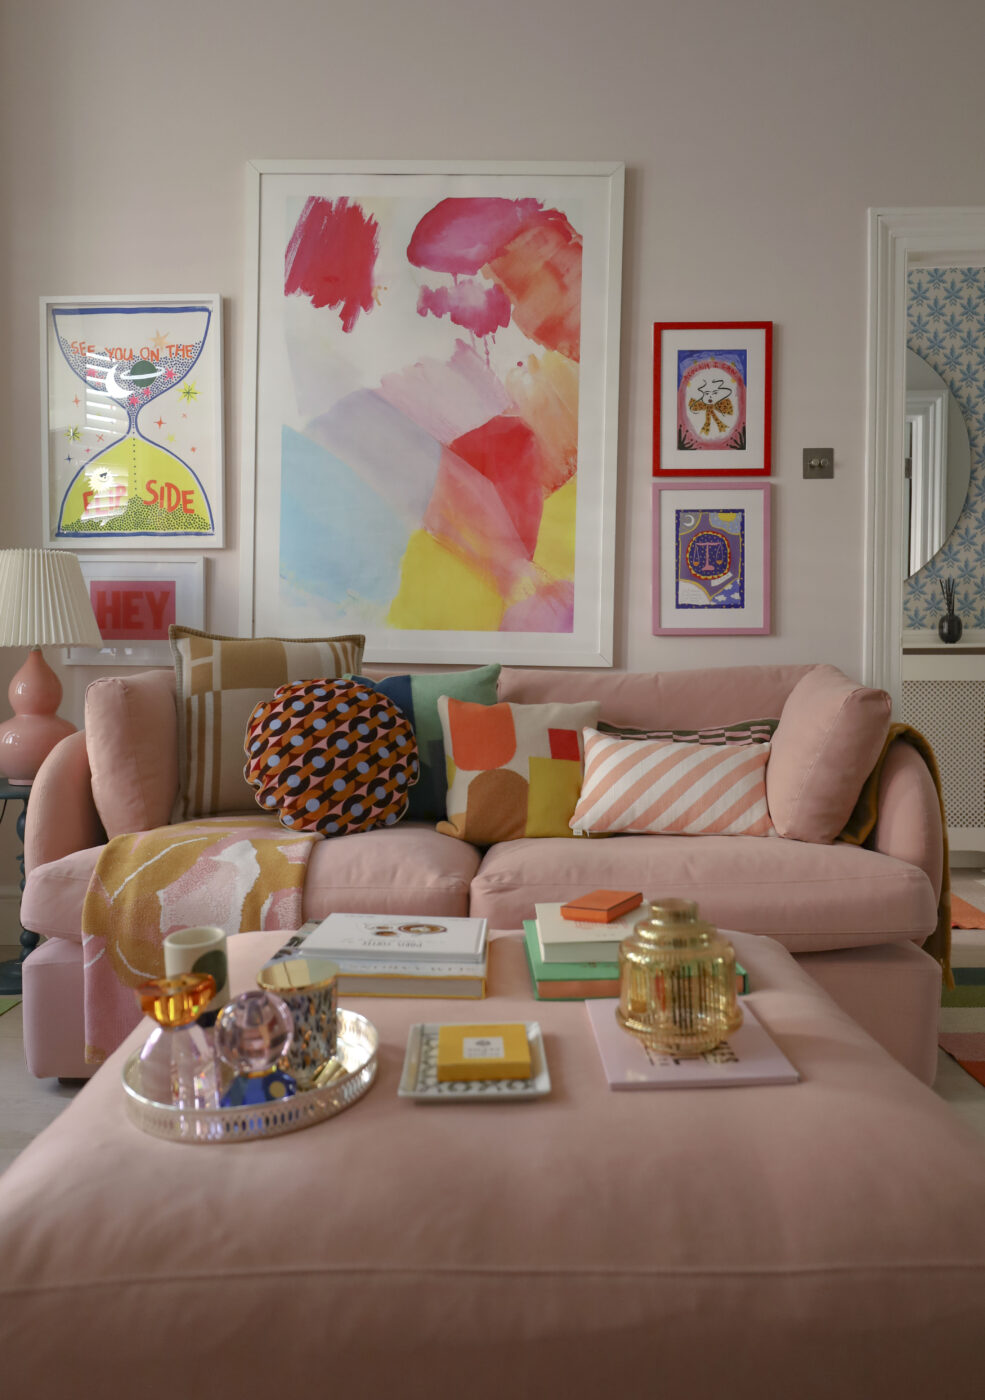 The Ren sofa, a pink modular sofa